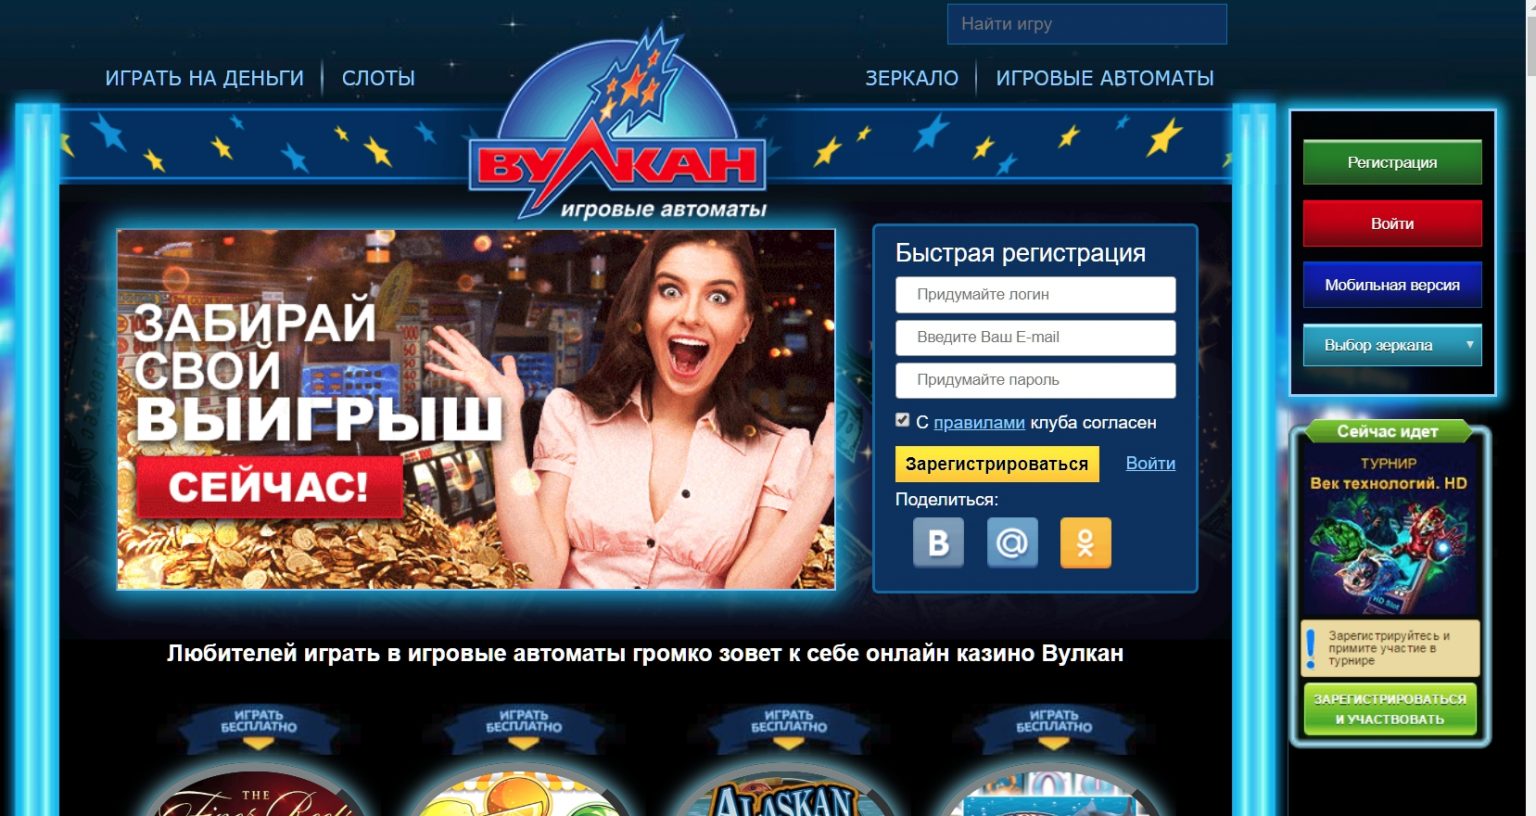 Самое честное интернет казино wolckano com казино играть в кредит